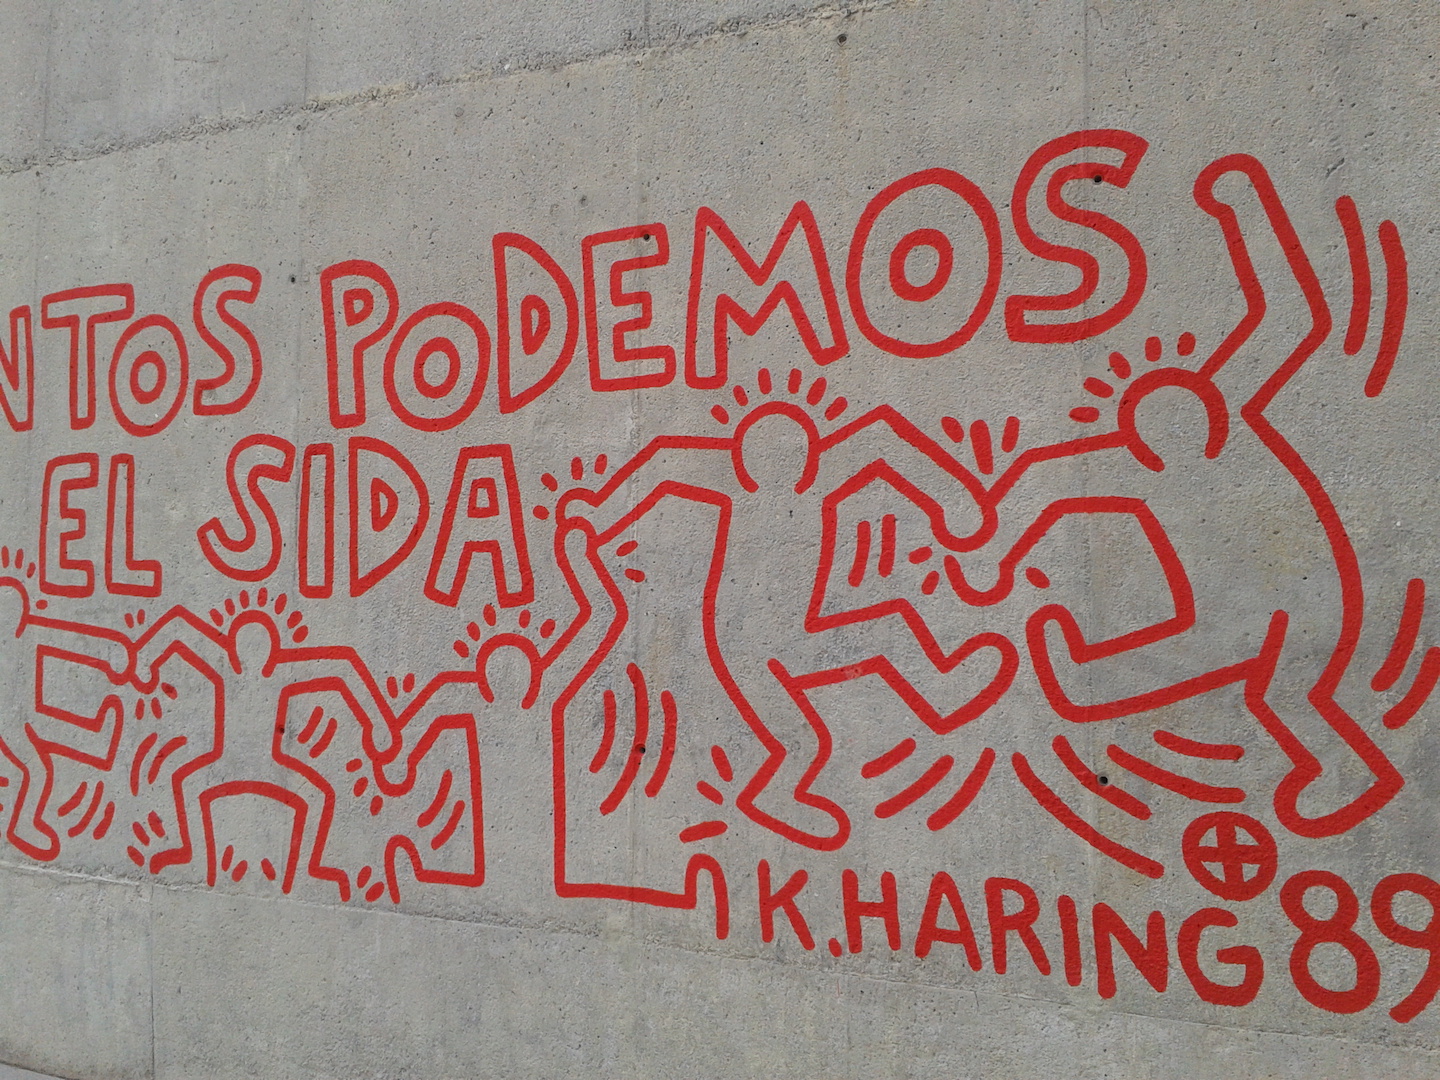 Reproduccio?_mural_Keith_Haring_Barcelona_03.jpg